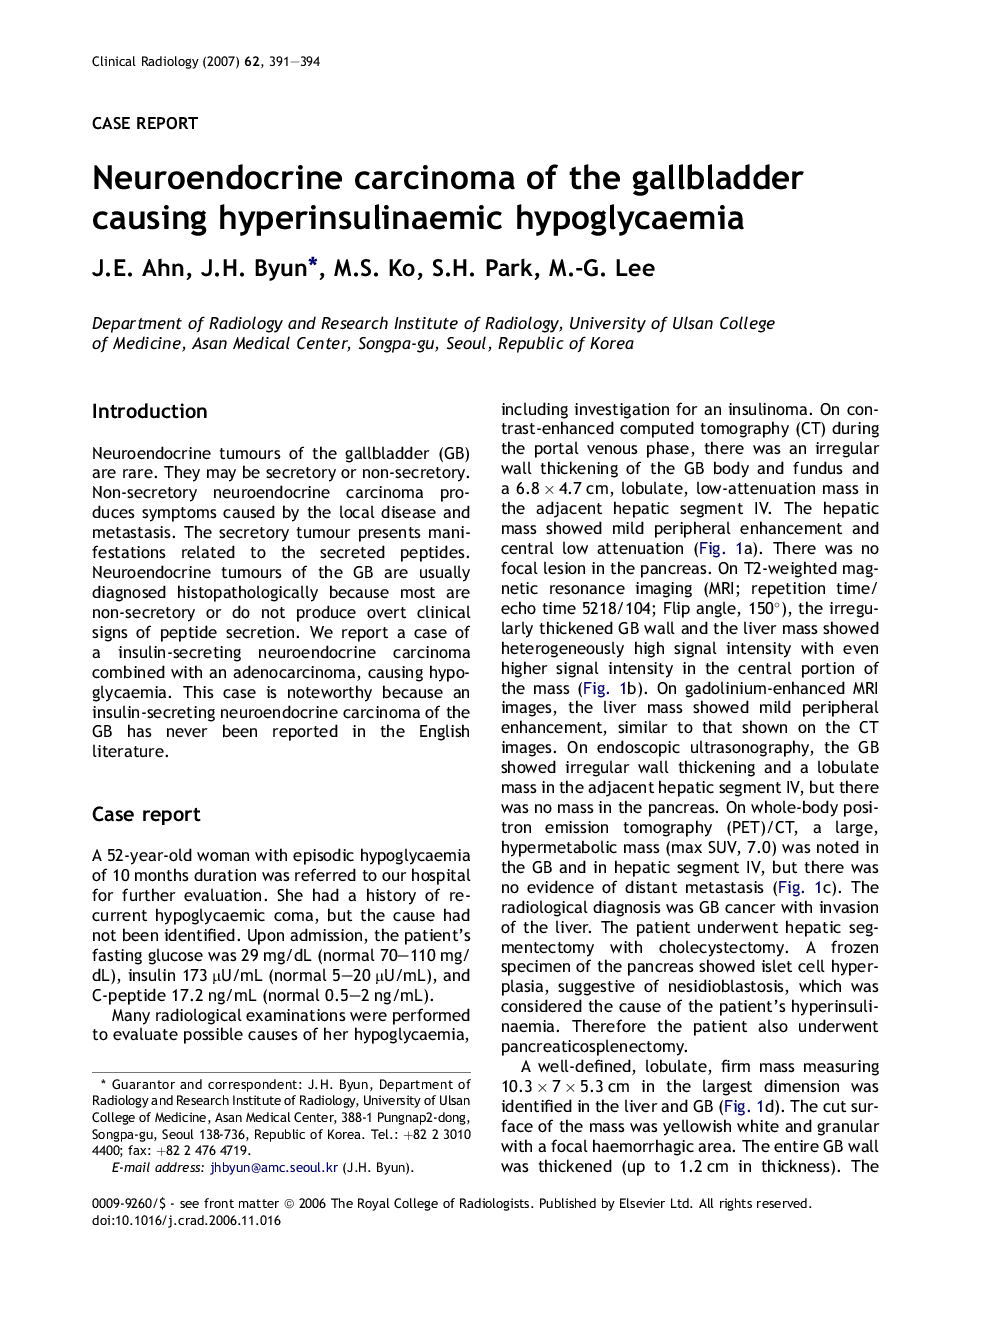 Neuroendocrine carcinoma of the gallbladder causing hyperinsulinaemic hypoglycaemia